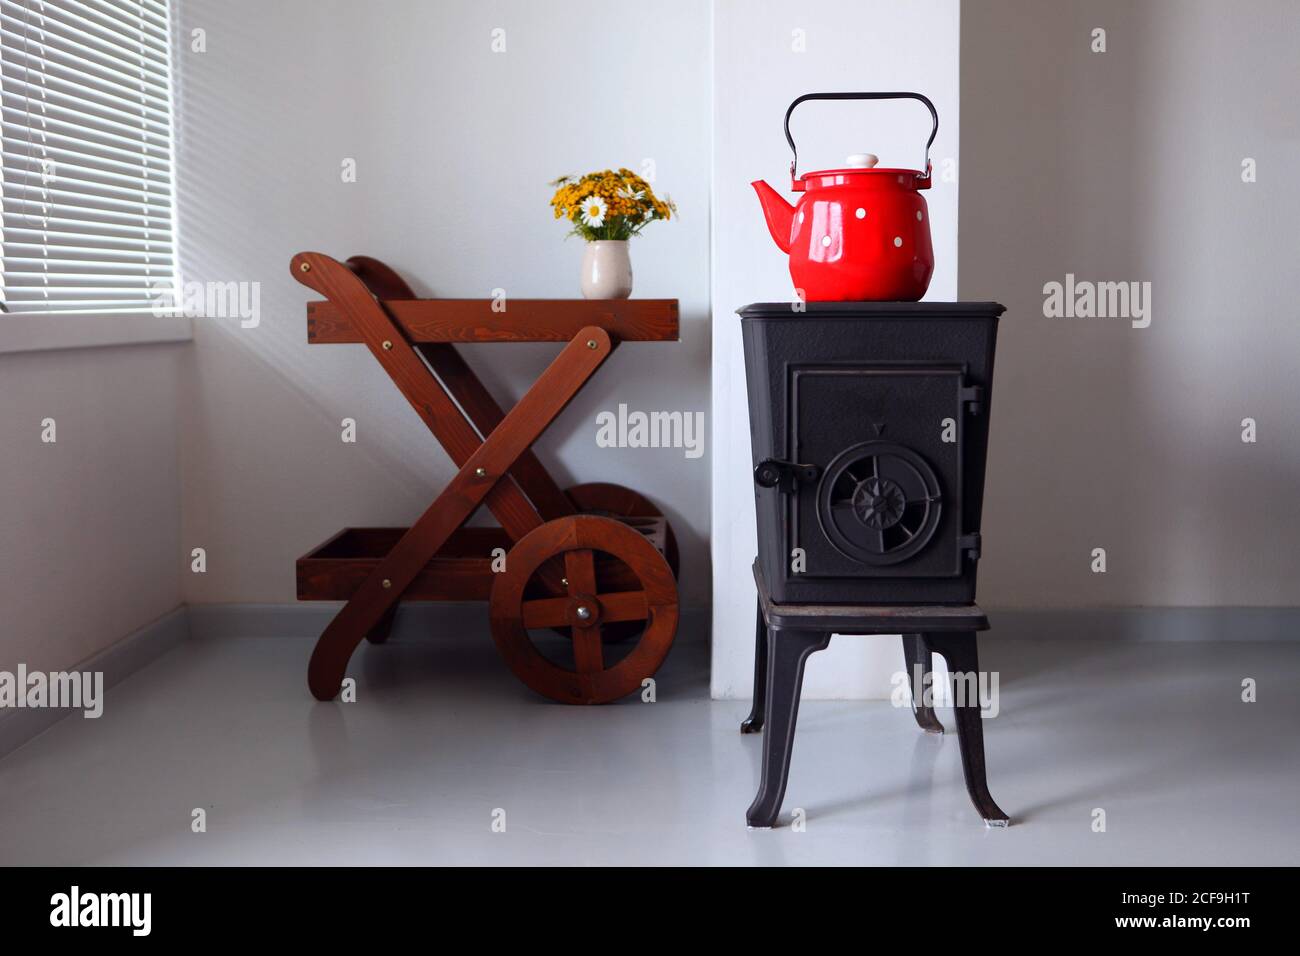 maison de campagne design et intérieur avec four. bouilloire rouge bouillant sur un poêle rétro dans la cuisine. Mise au point sur un bec Banque D'Images